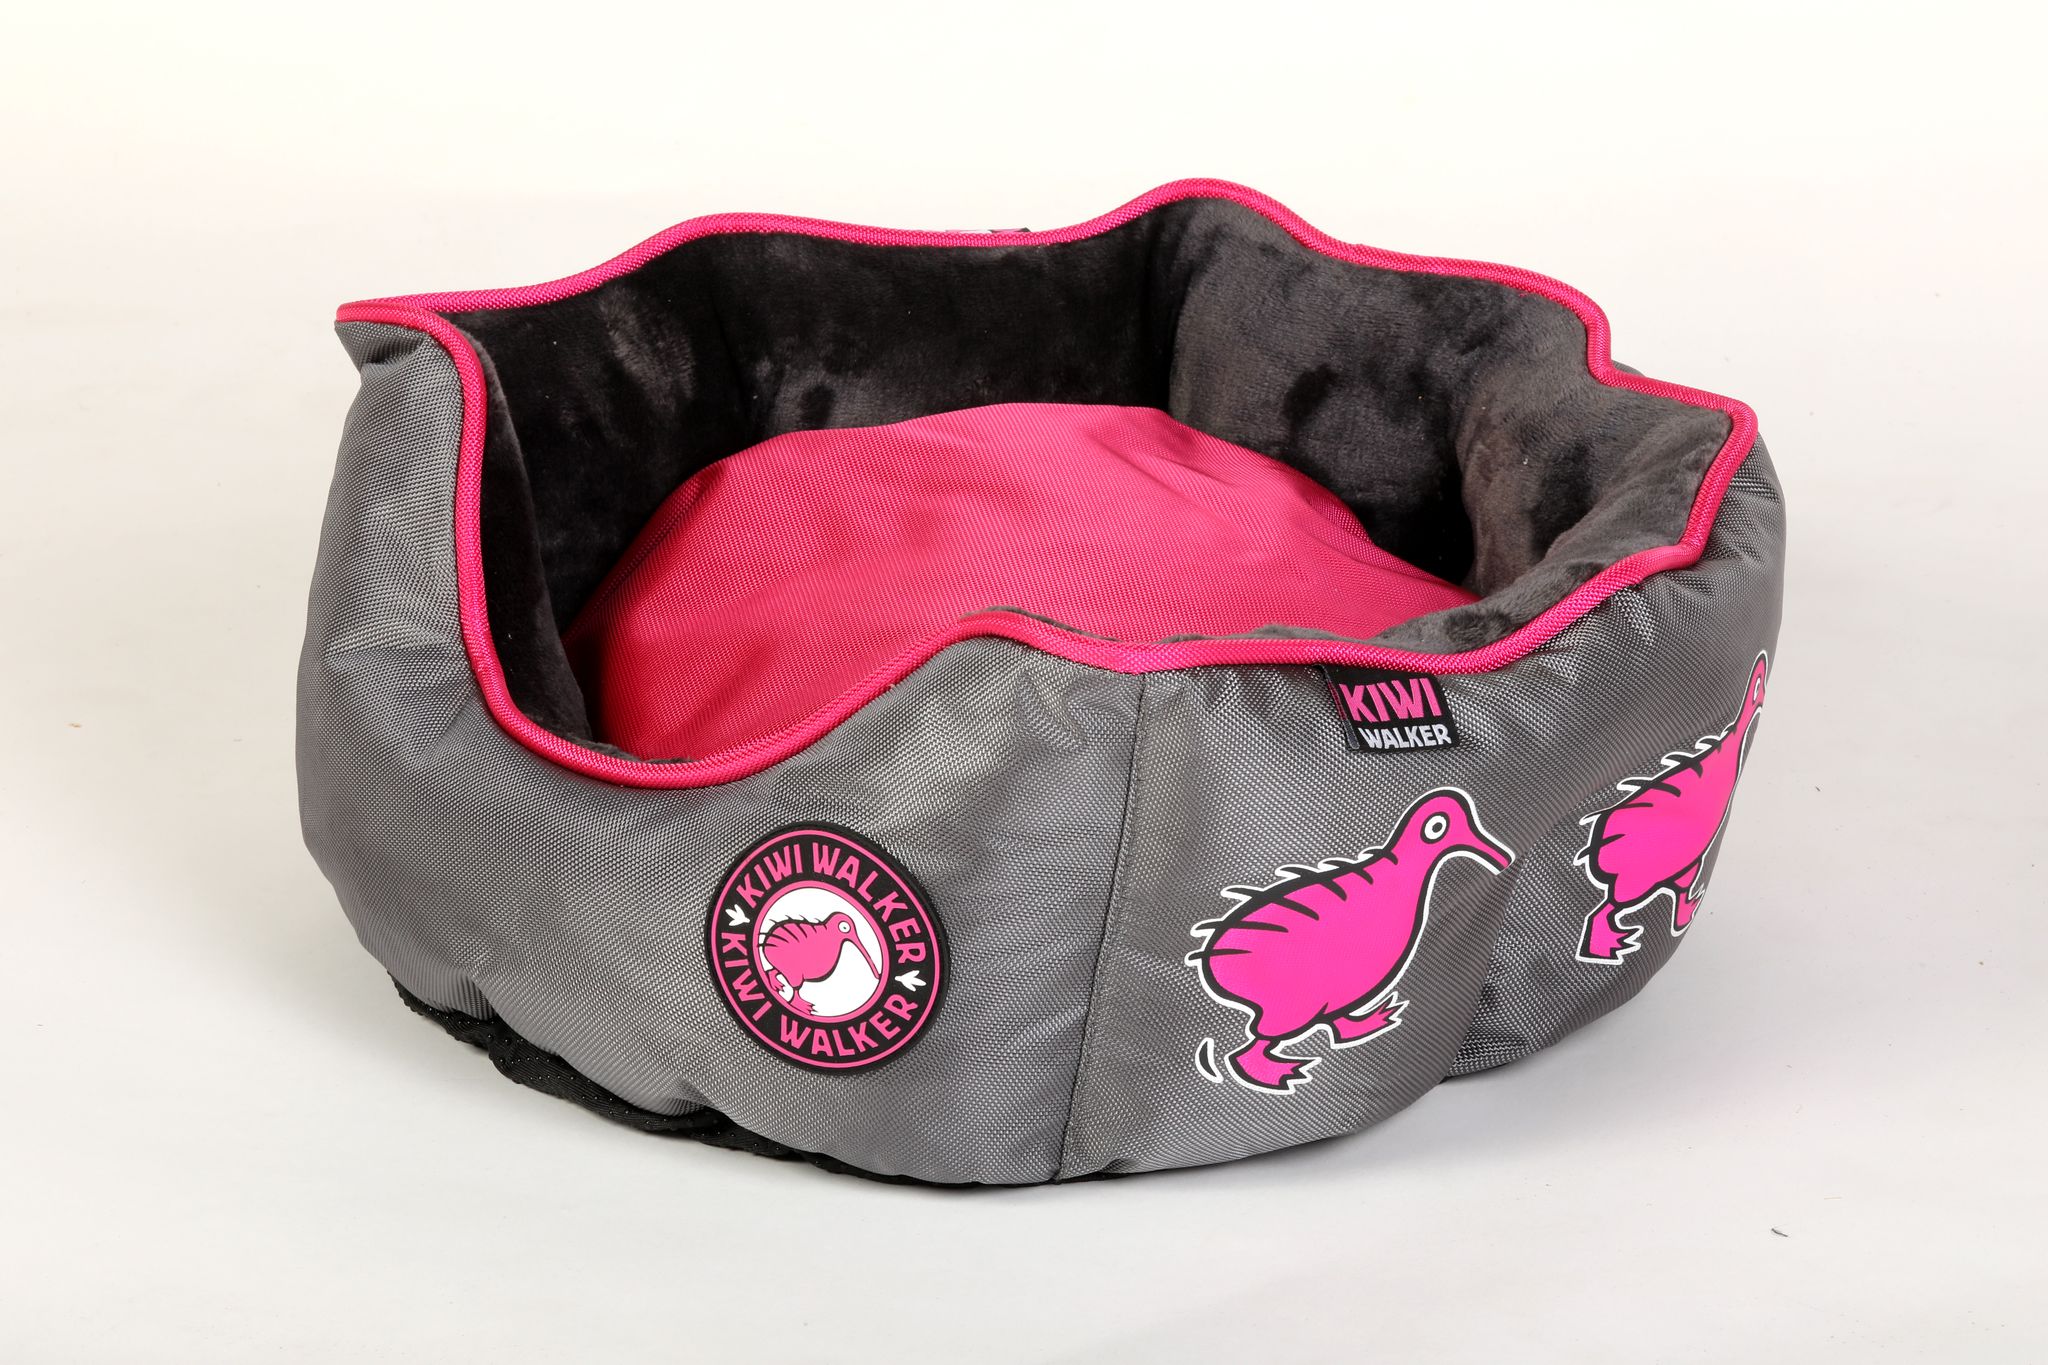 Pelech Kiwi Walker Running Oval Bed růžová/šedá Velikost: M - 45×45×18cm